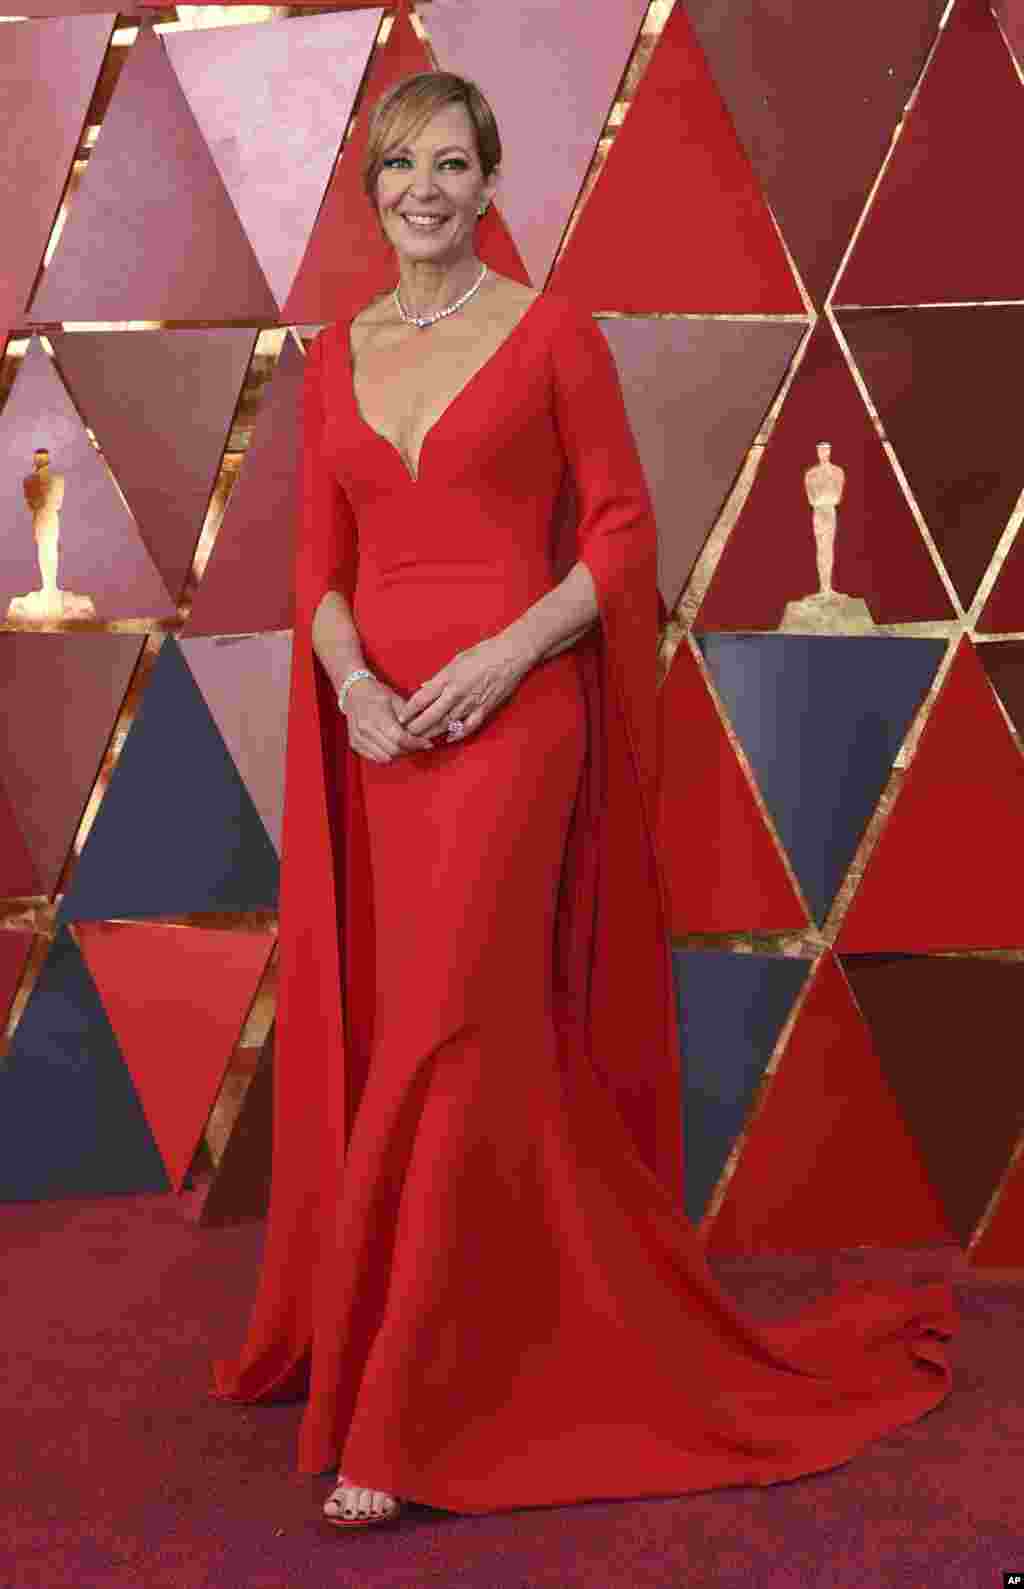 Эллисон Дженни в красном платье на красной ковровой дорожке. Актриса получила &laquo;Оскар&raquo; за лучшую женскую роль второго плана в фильме &laquo;Тоня против всех&raquo;. (Голливуд, Калифорния, 4 марта 2018)